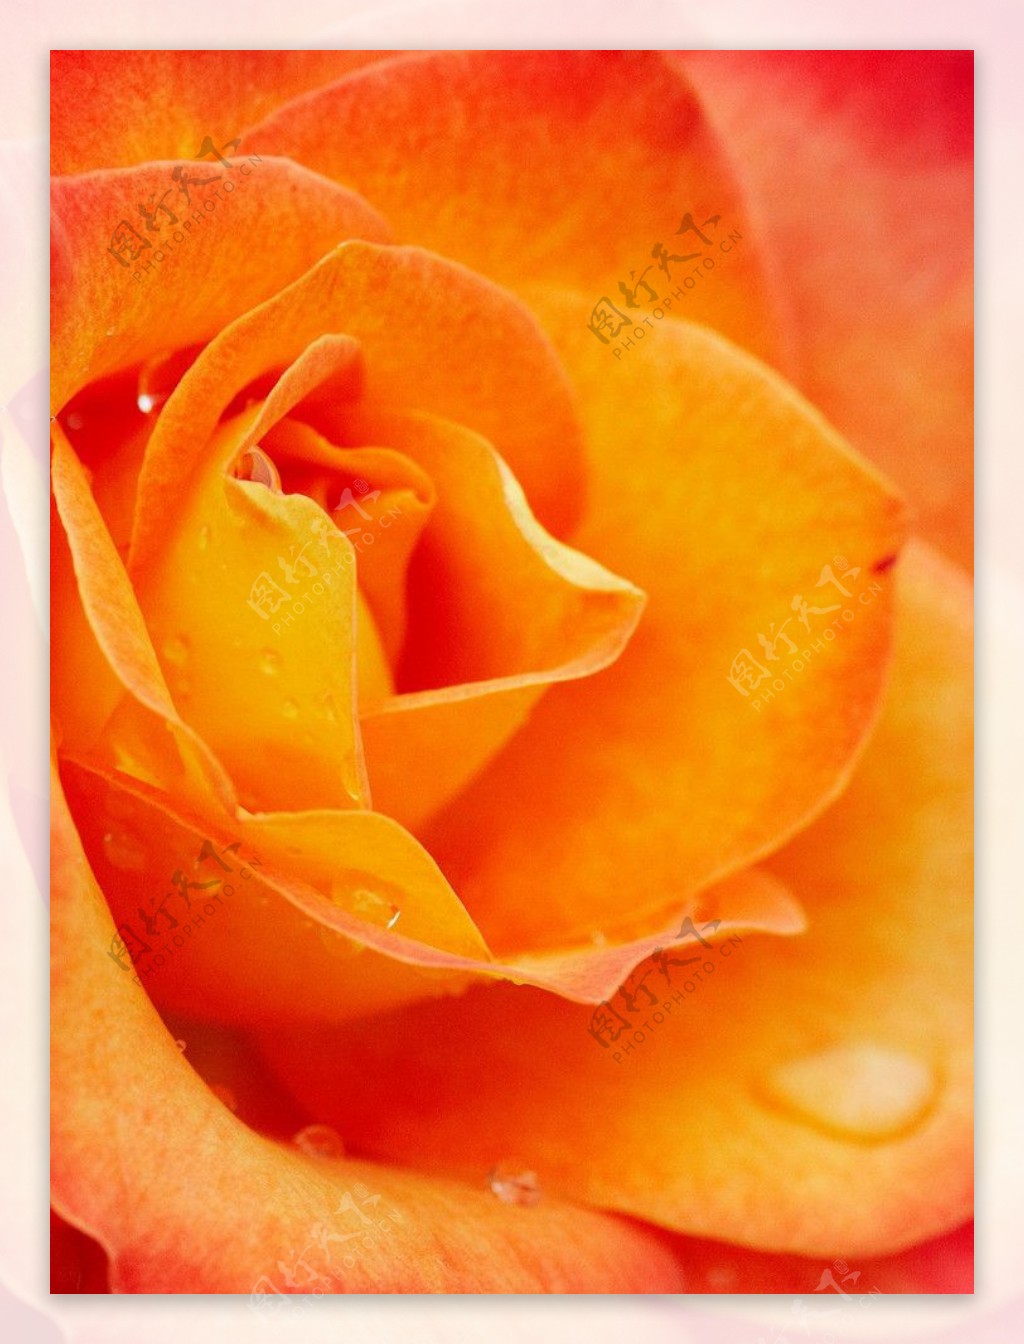 橙红玫瑰特写图片